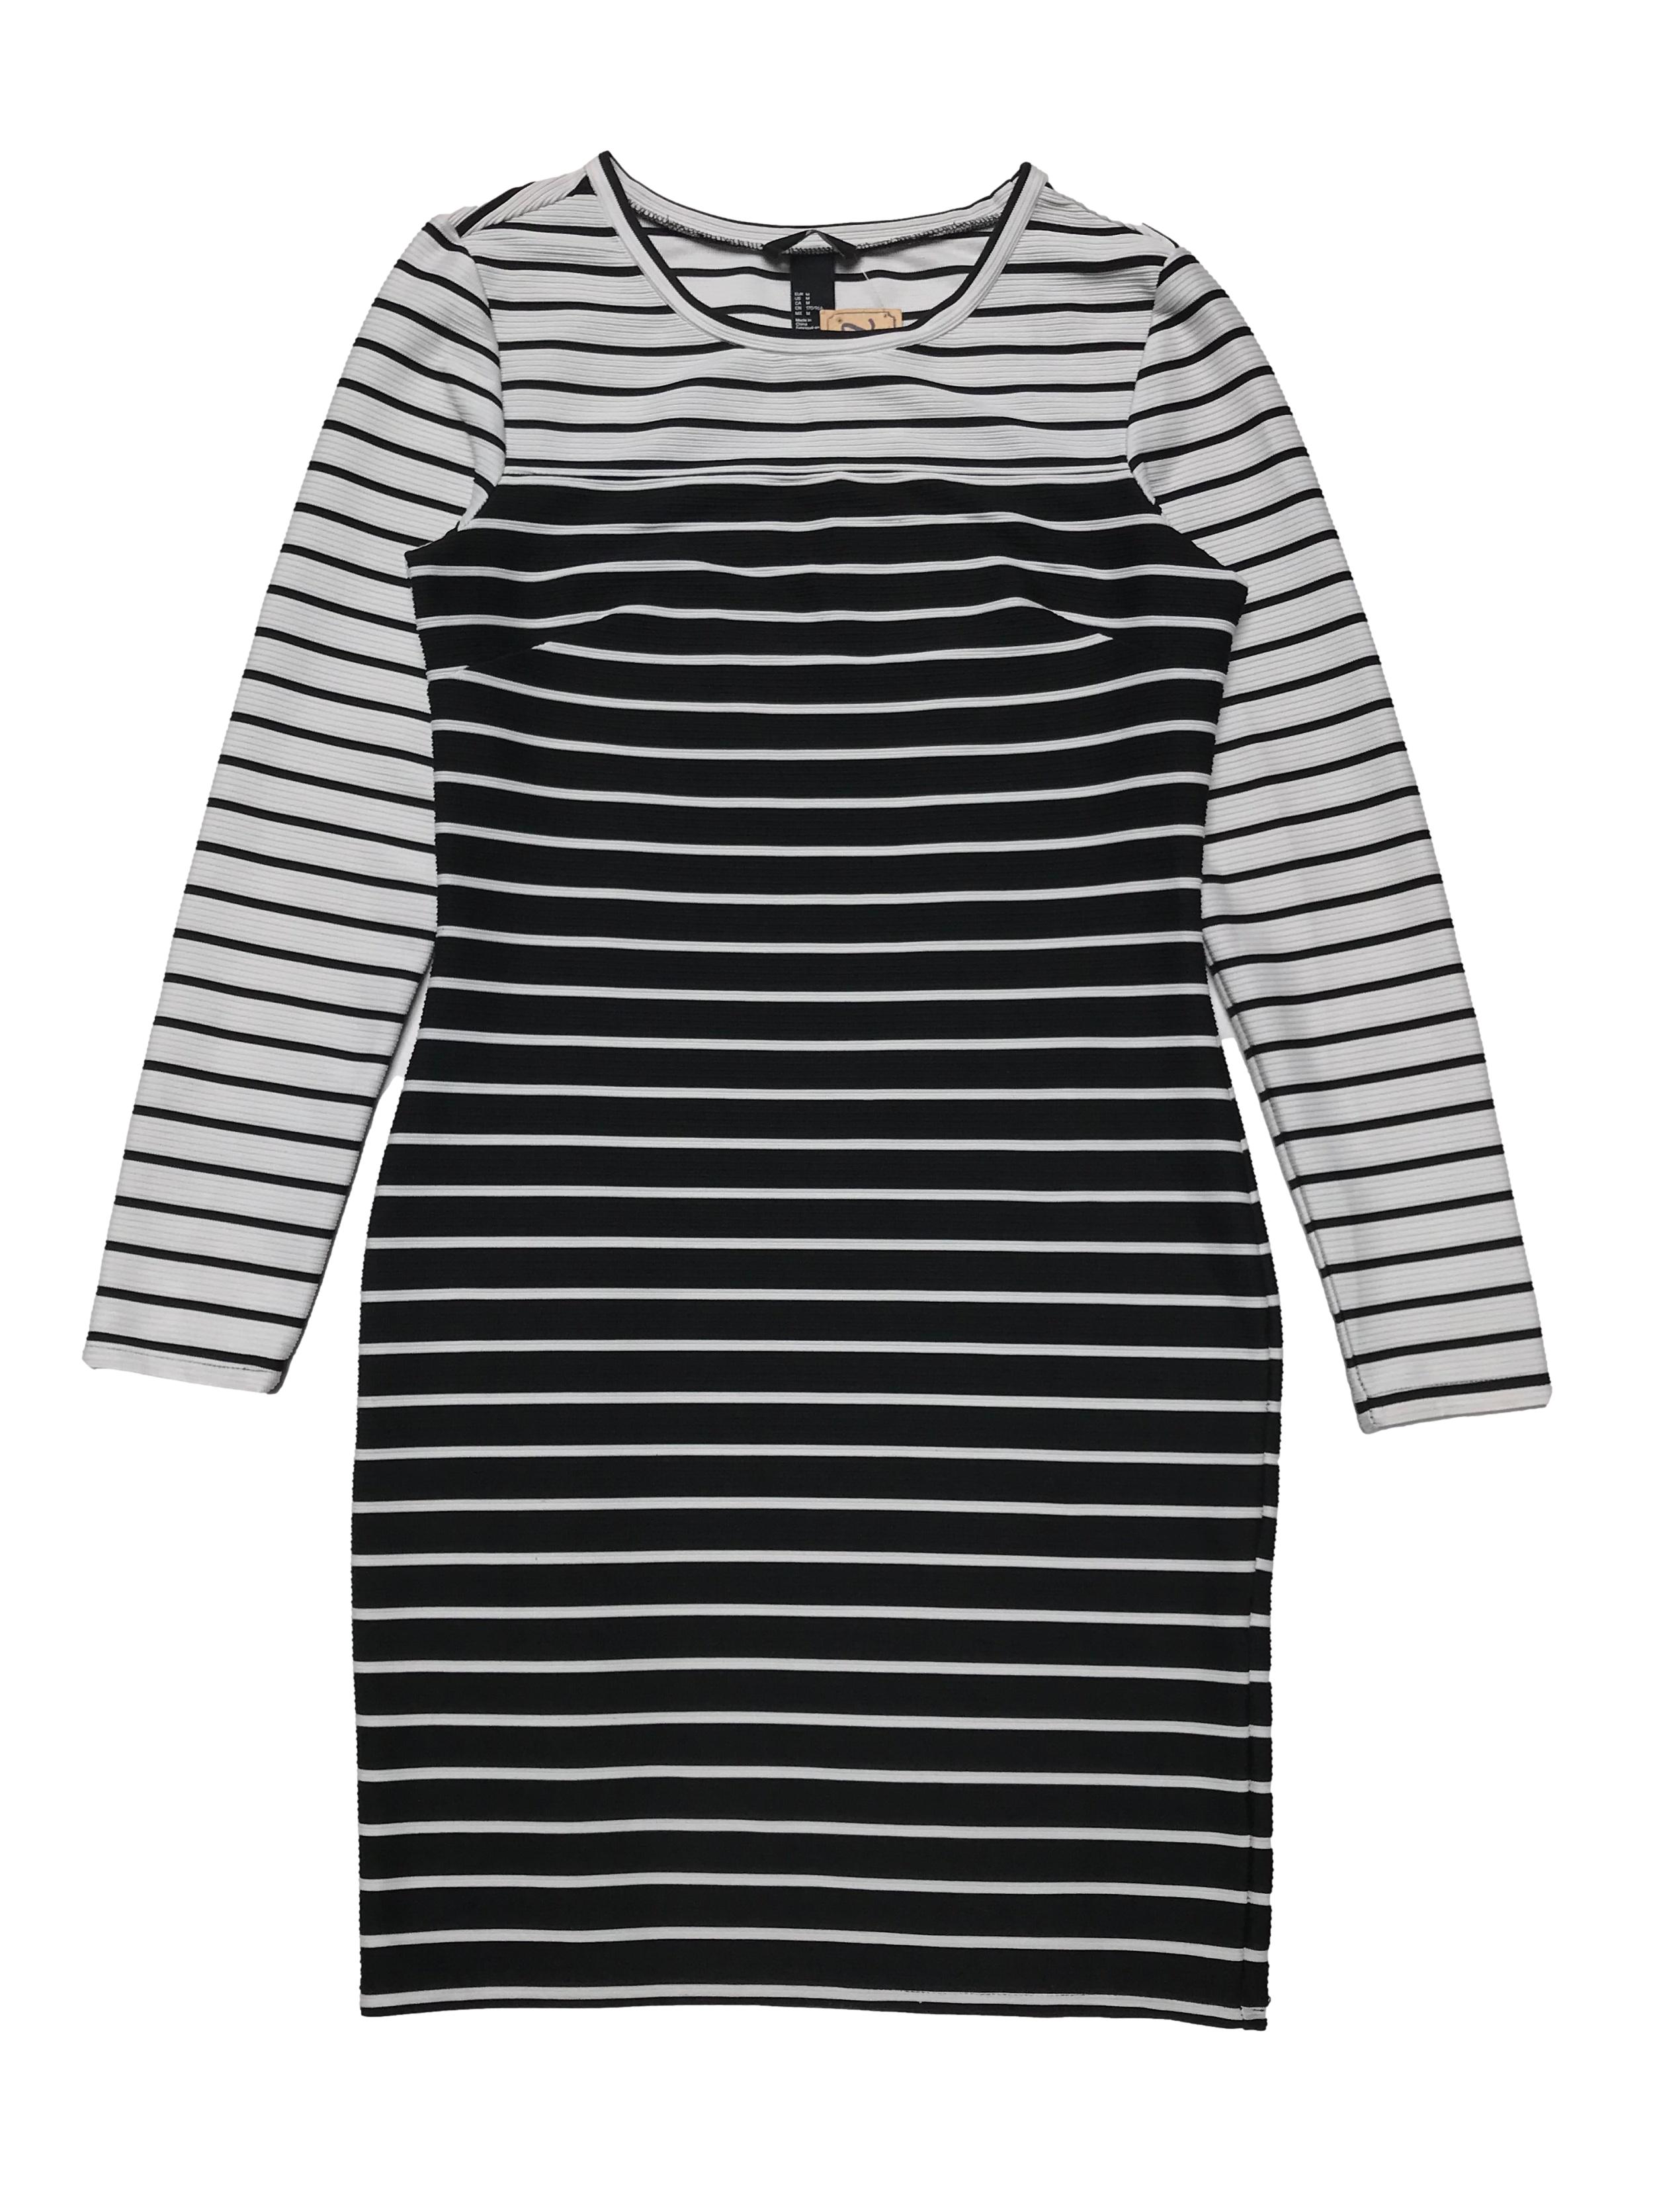 Vestido H&M de tela con textura en líneas ligeramente stretch, corte tubo, en tonos blanco y negro. Busto 92cm sin estirar Largo 90cm